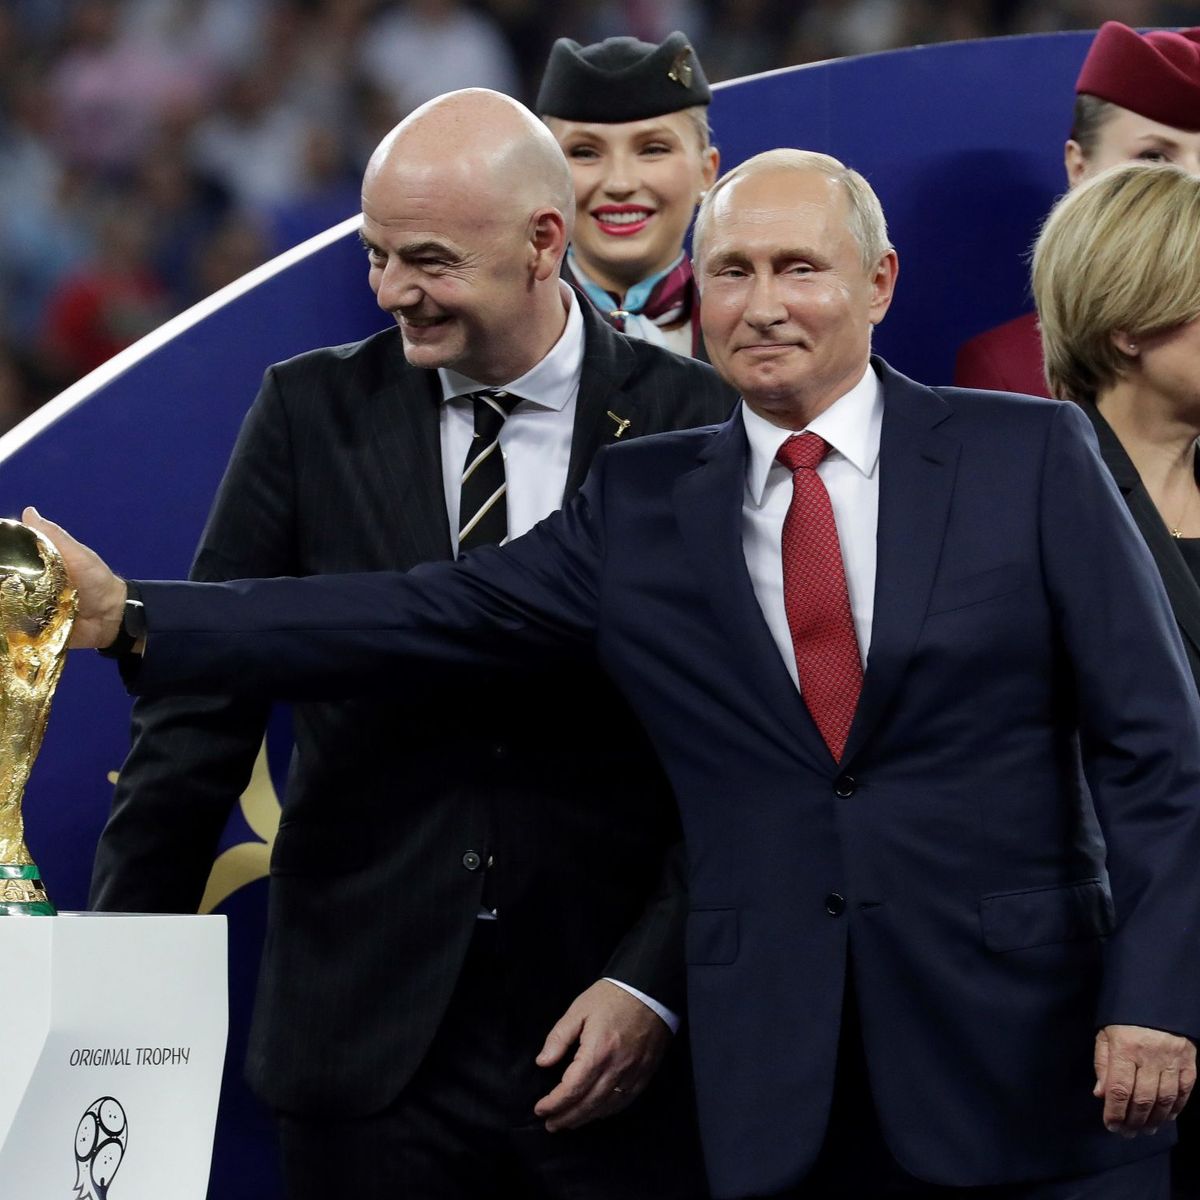 La Copa mundo llegó a Rusia! - Mundial Rusia 2018 